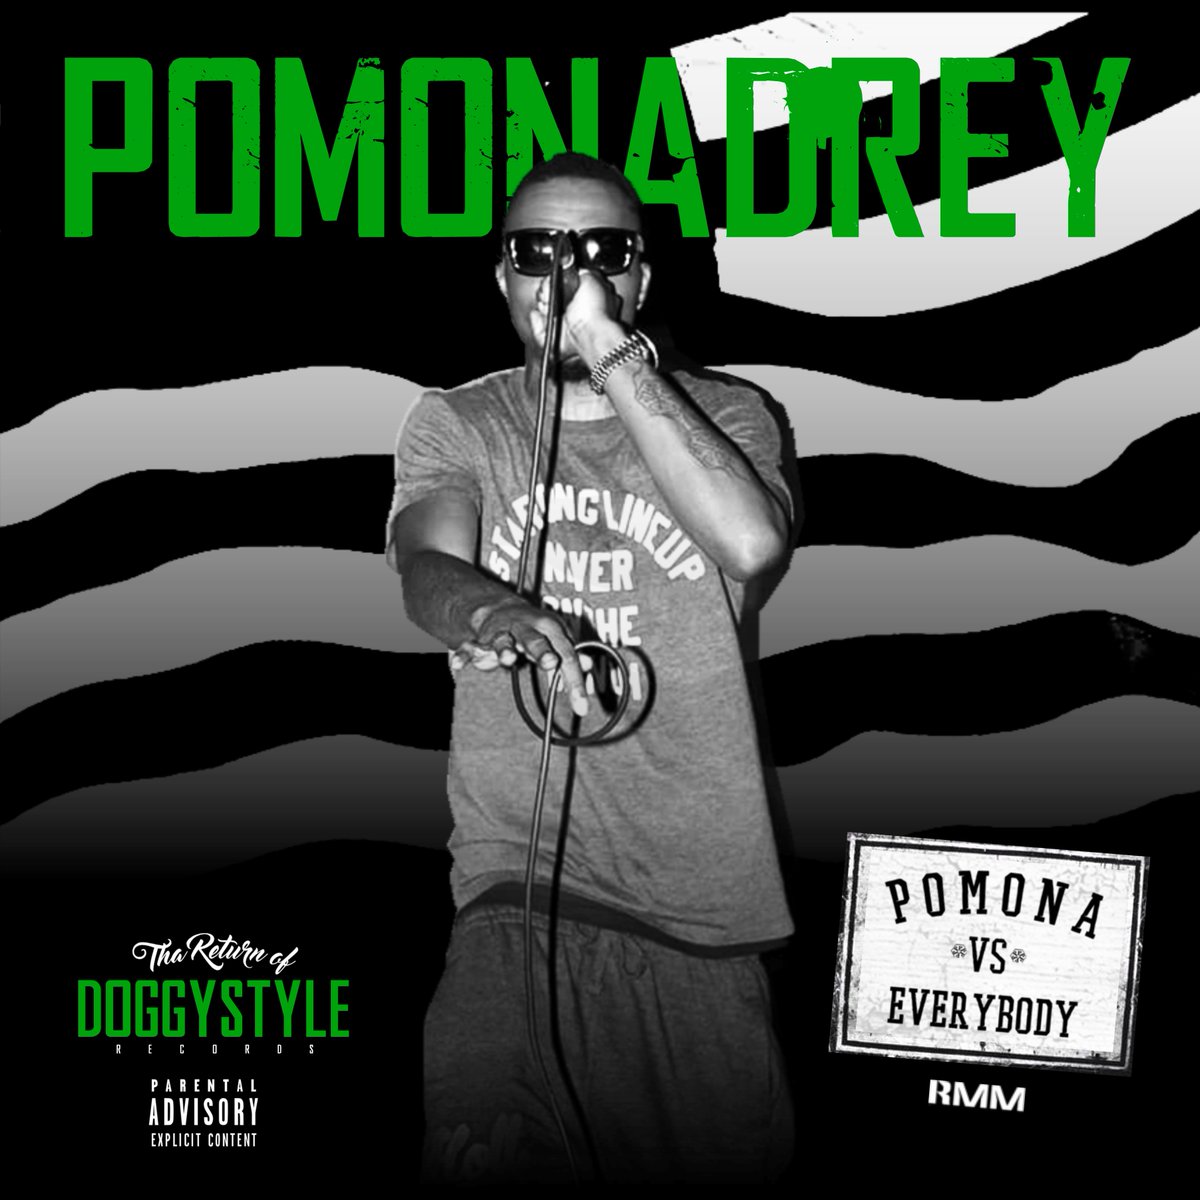 #pomona city stand up !! @PomonaDrey #PomonaVsEverybody! https://t.co/WY5xQJHHgK #DoggystyleRecords https://t.co/OAYxNO4HoE